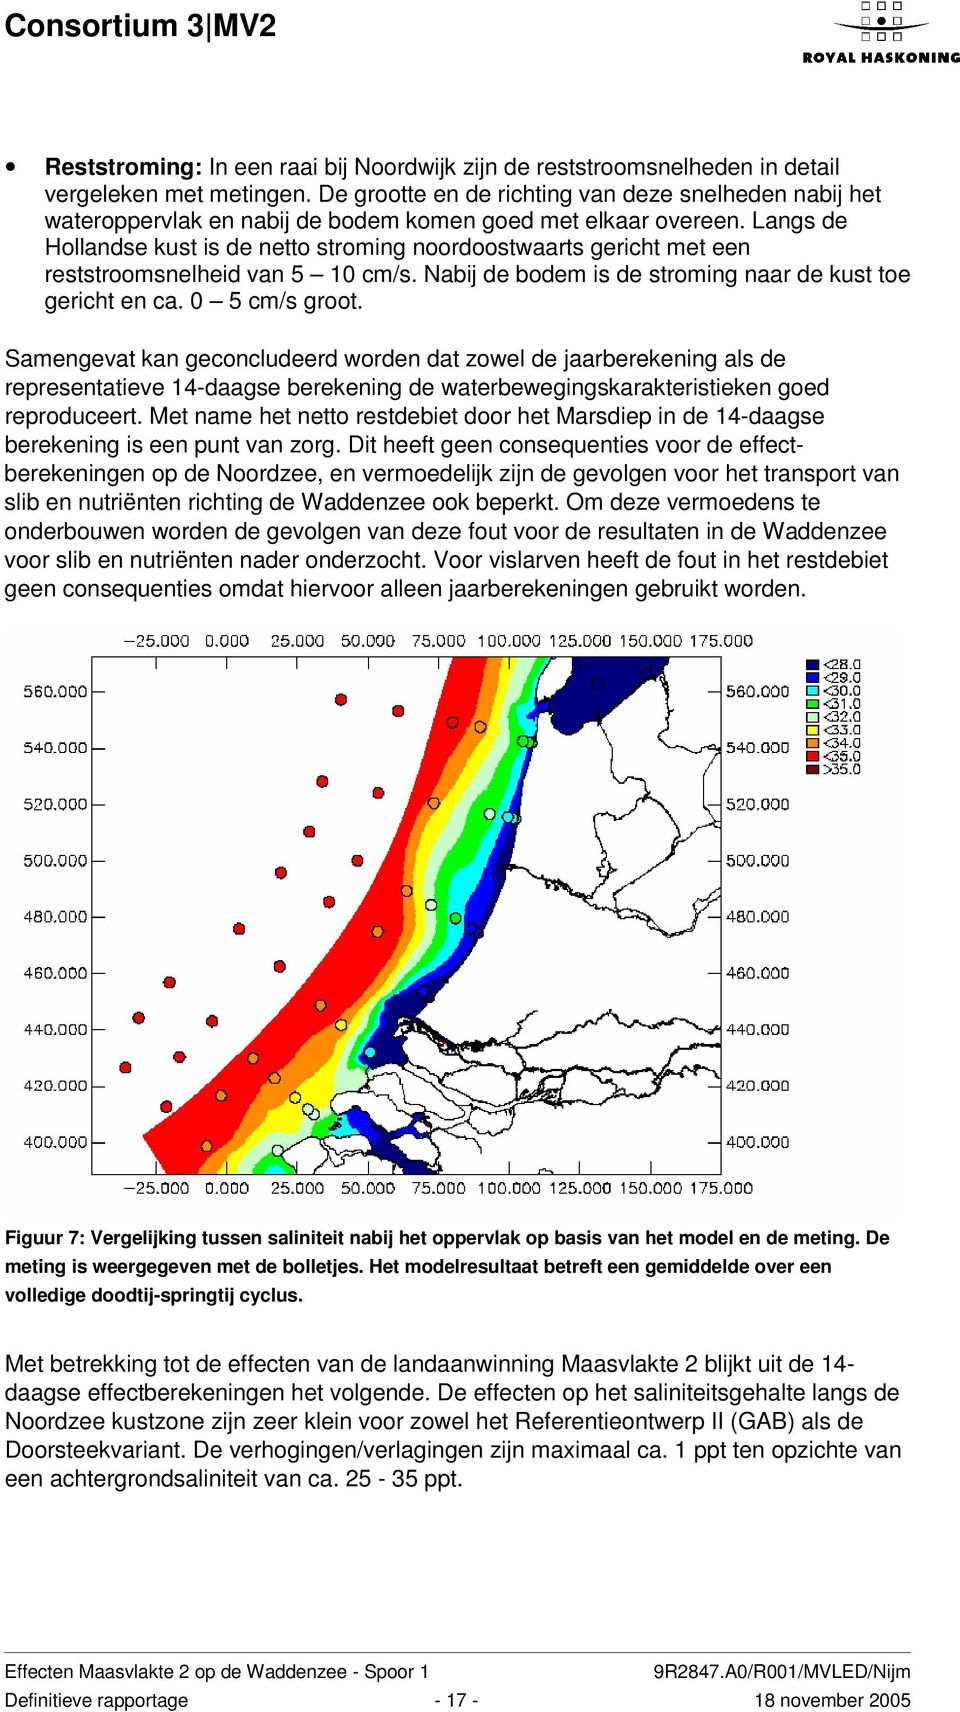 Langs de Hollandse kust is de netto stroming noordoostwaarts gericht met een reststroomsnelheid van 5 10 cm/s. Nabij de bodem is de stroming naar de kust toe gericht en ca. 0 5 cm/s groot.